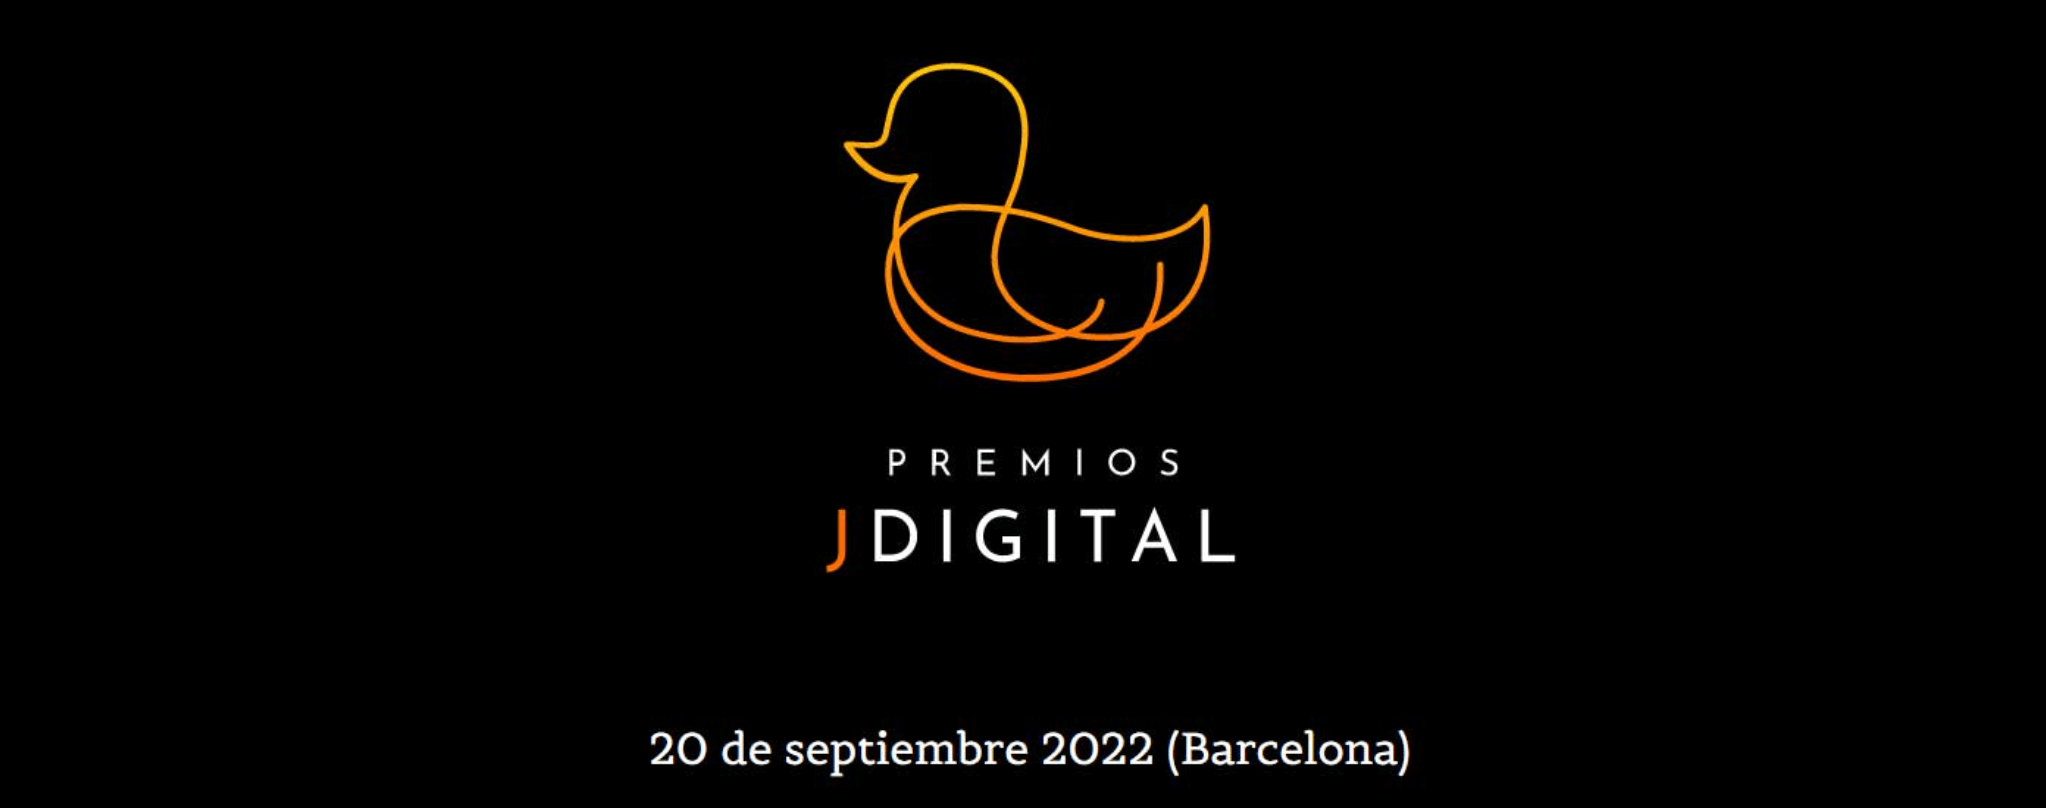 ¡Casinos online ganadores en los Premios Jdigital 2022!